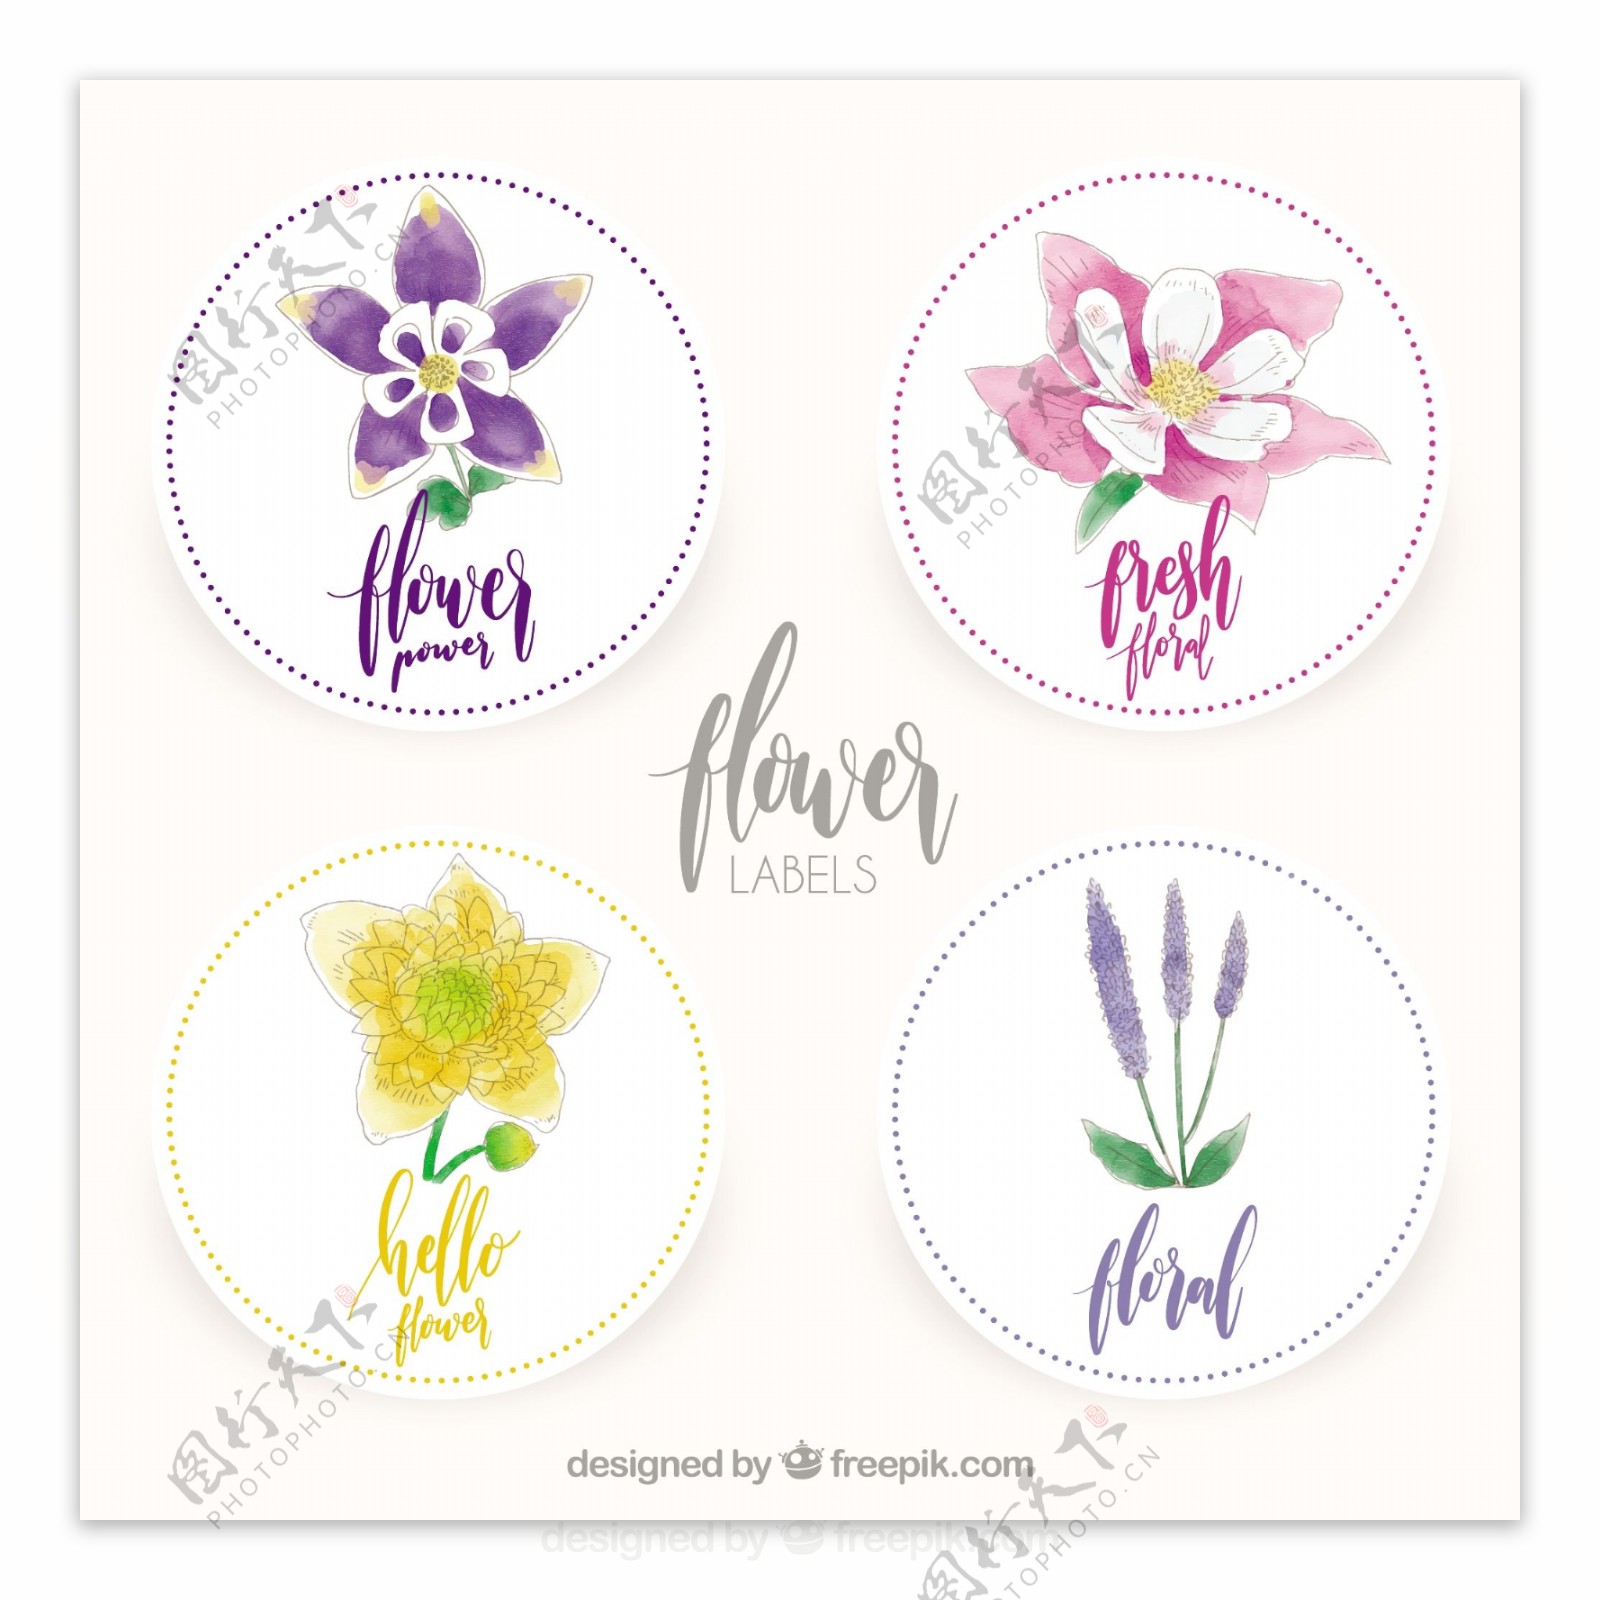 四个水彩花卉圆形标签